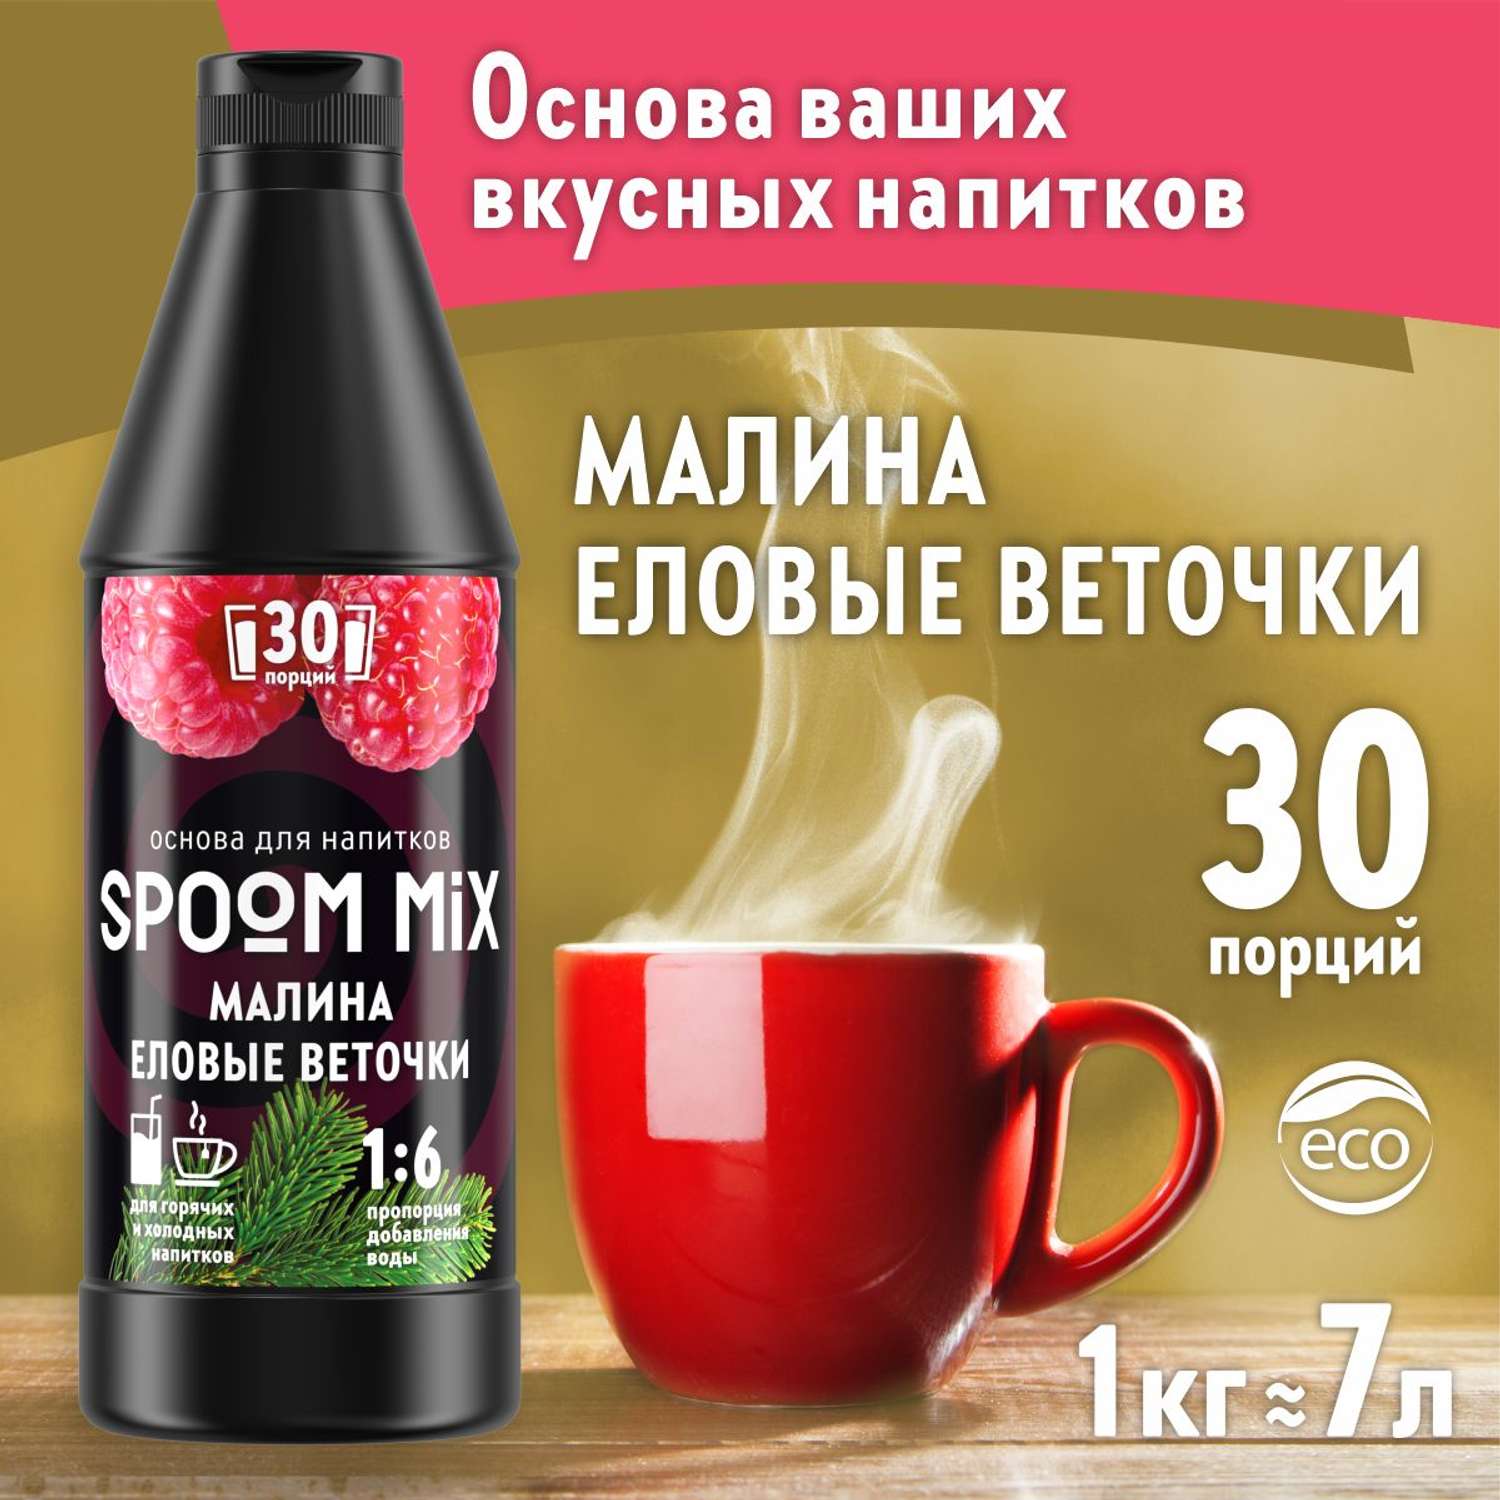 Основа для напитков SPOOM MIX Малина еловые веточки 1 кг - фото 1